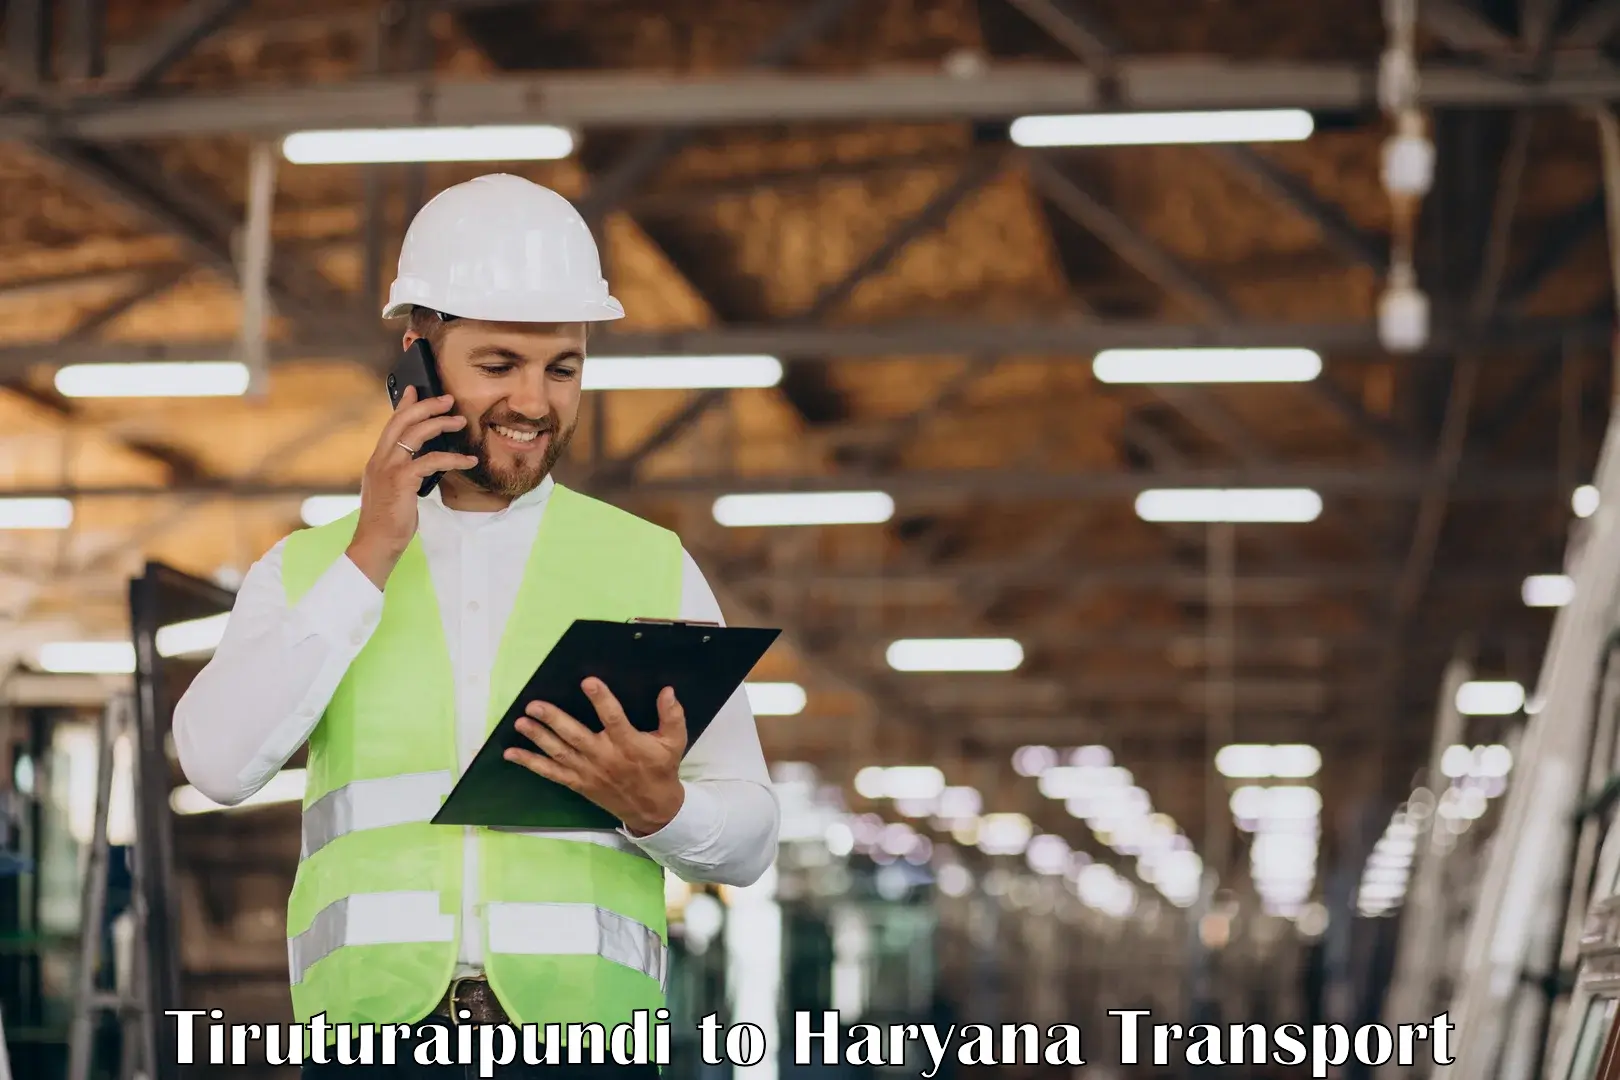 Cargo transportation services Tiruturaipundi to Hansi